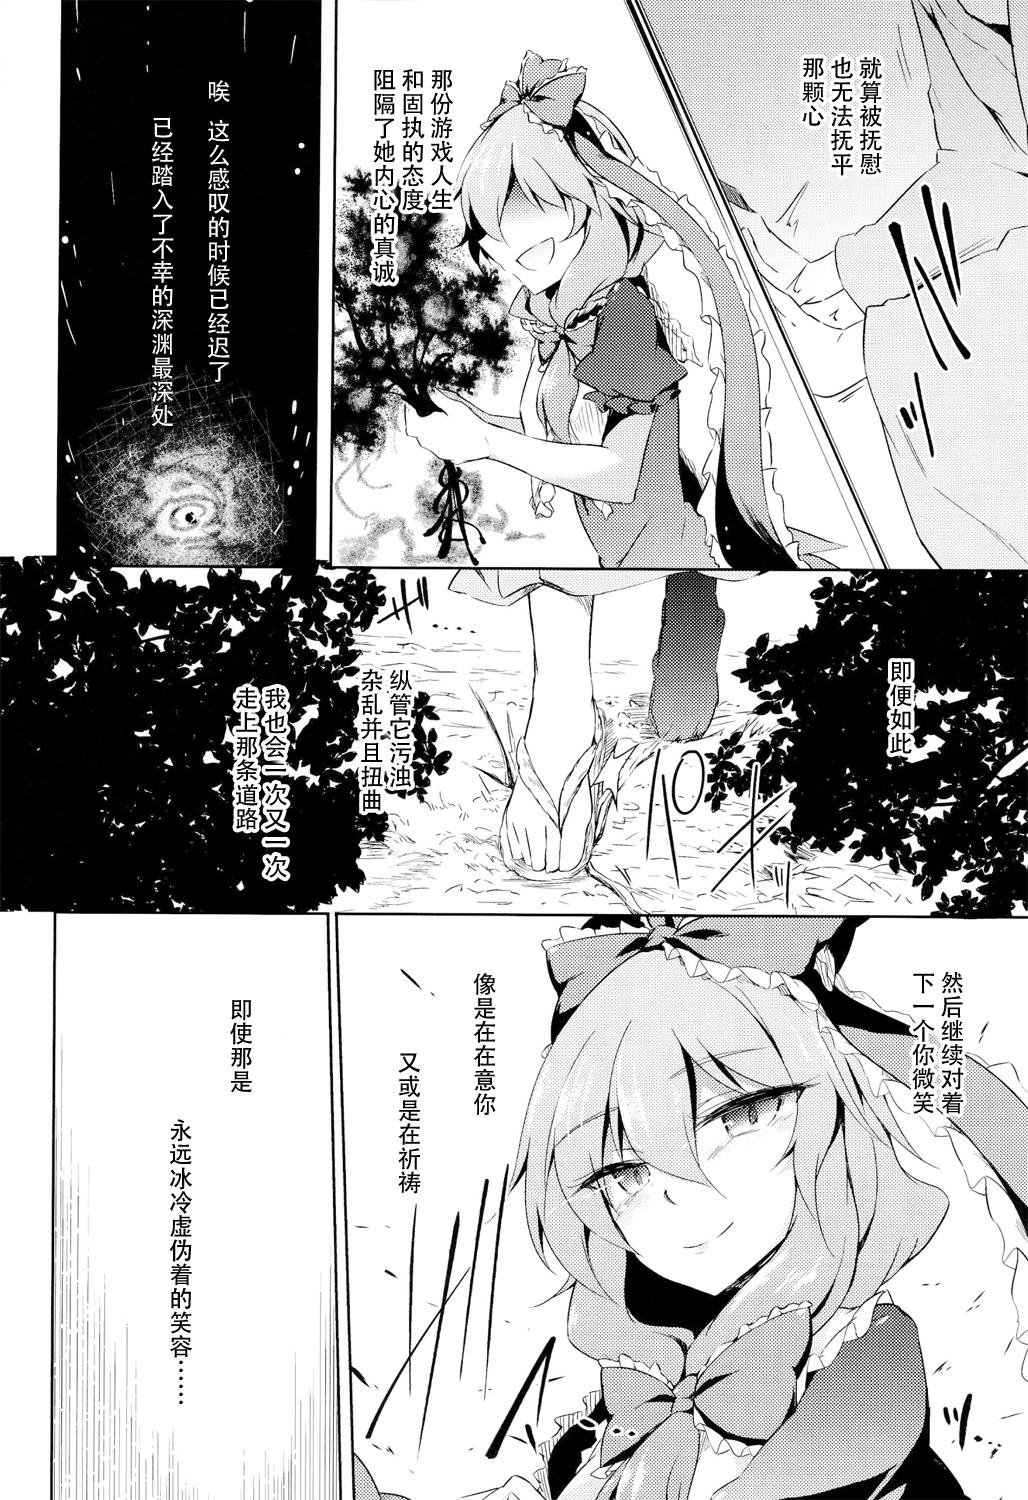 Lesbians *Chuui* Horeru to Yakui kara - Touhou project Lovers - Page 23